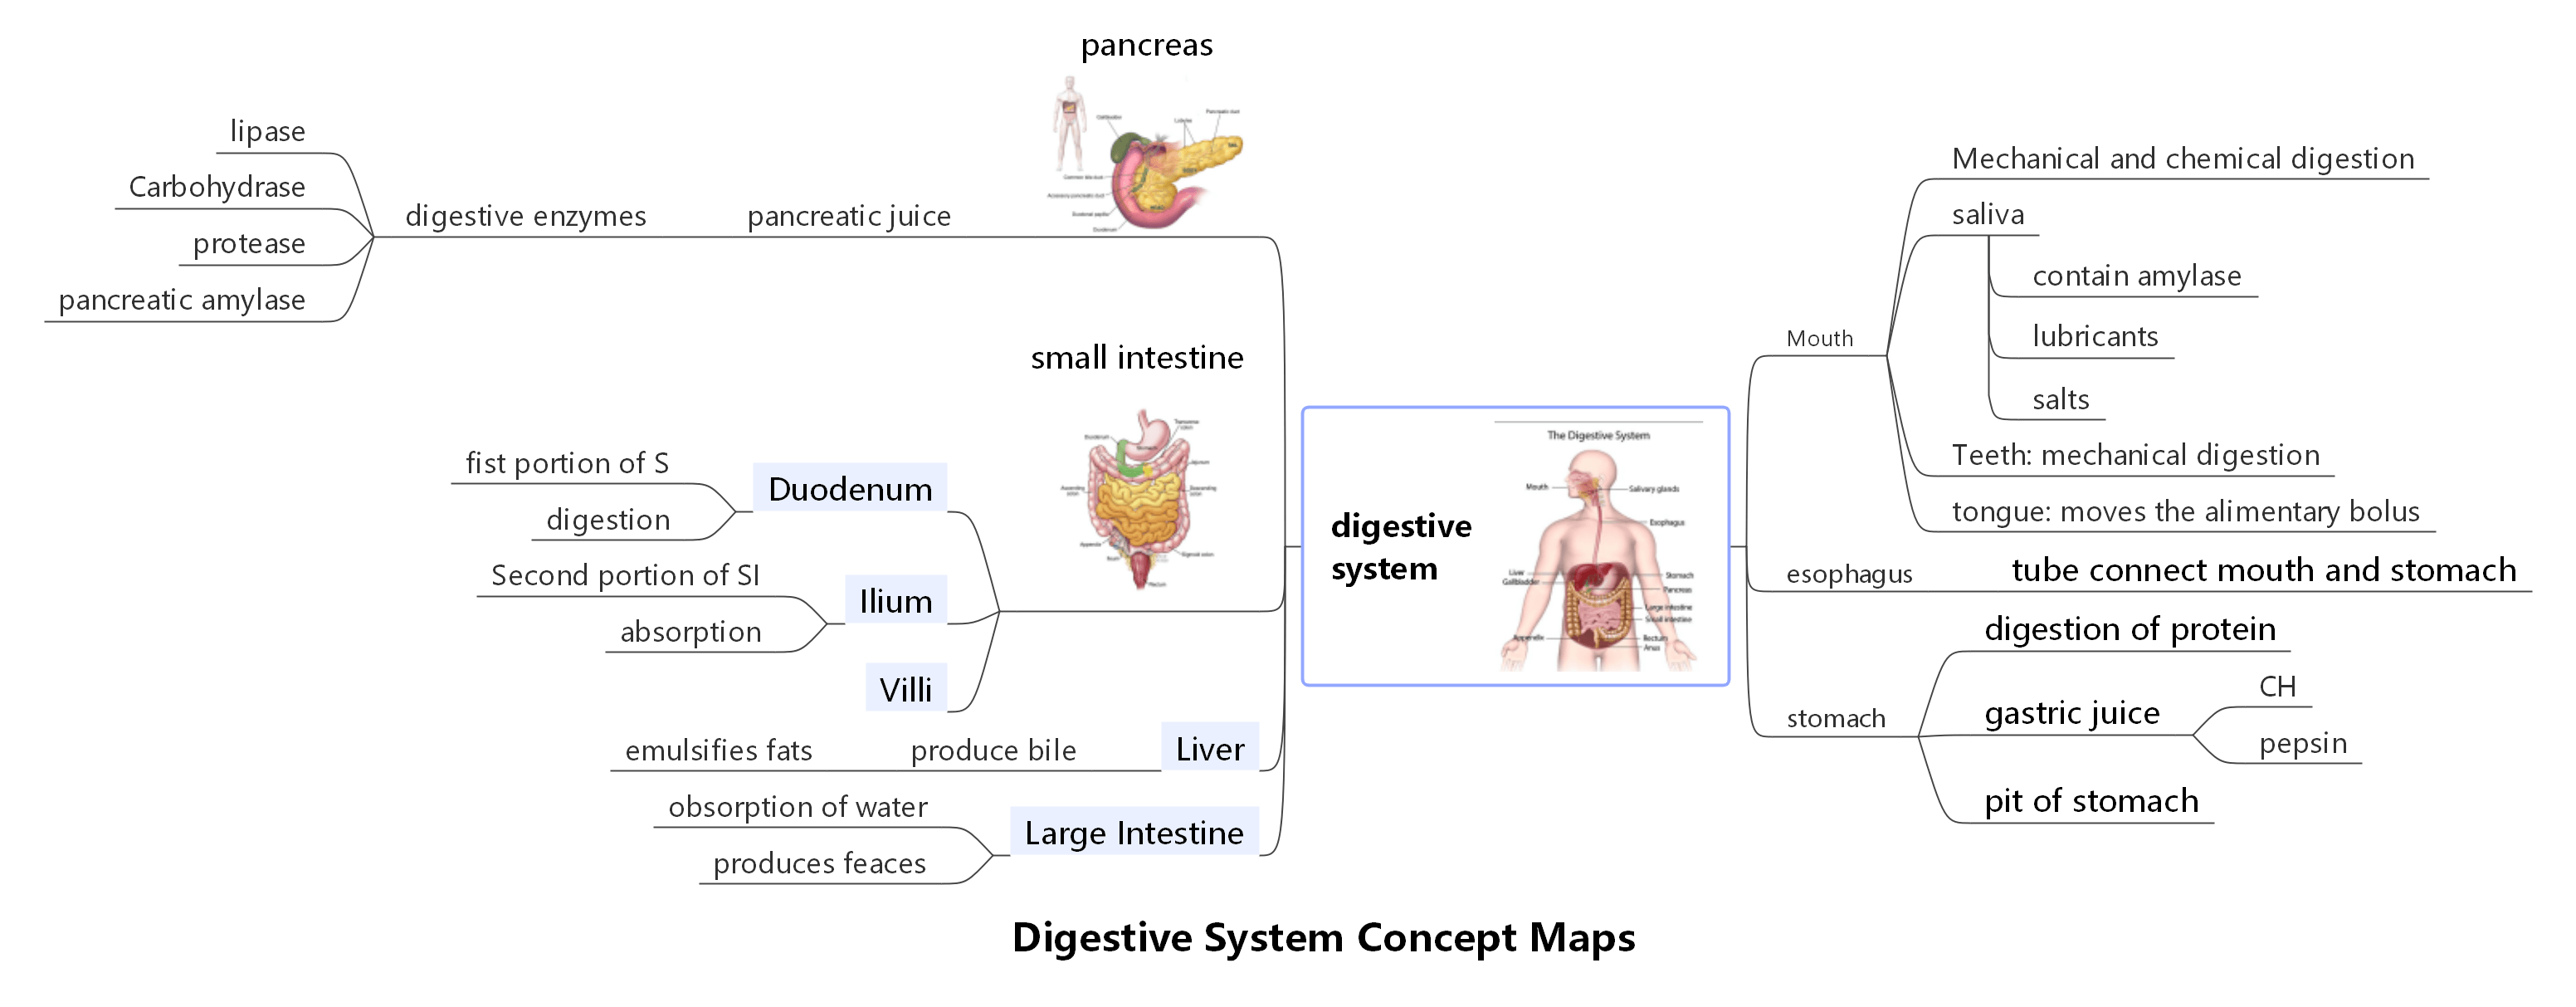 Konzeptkarte für das Verdauungssystem